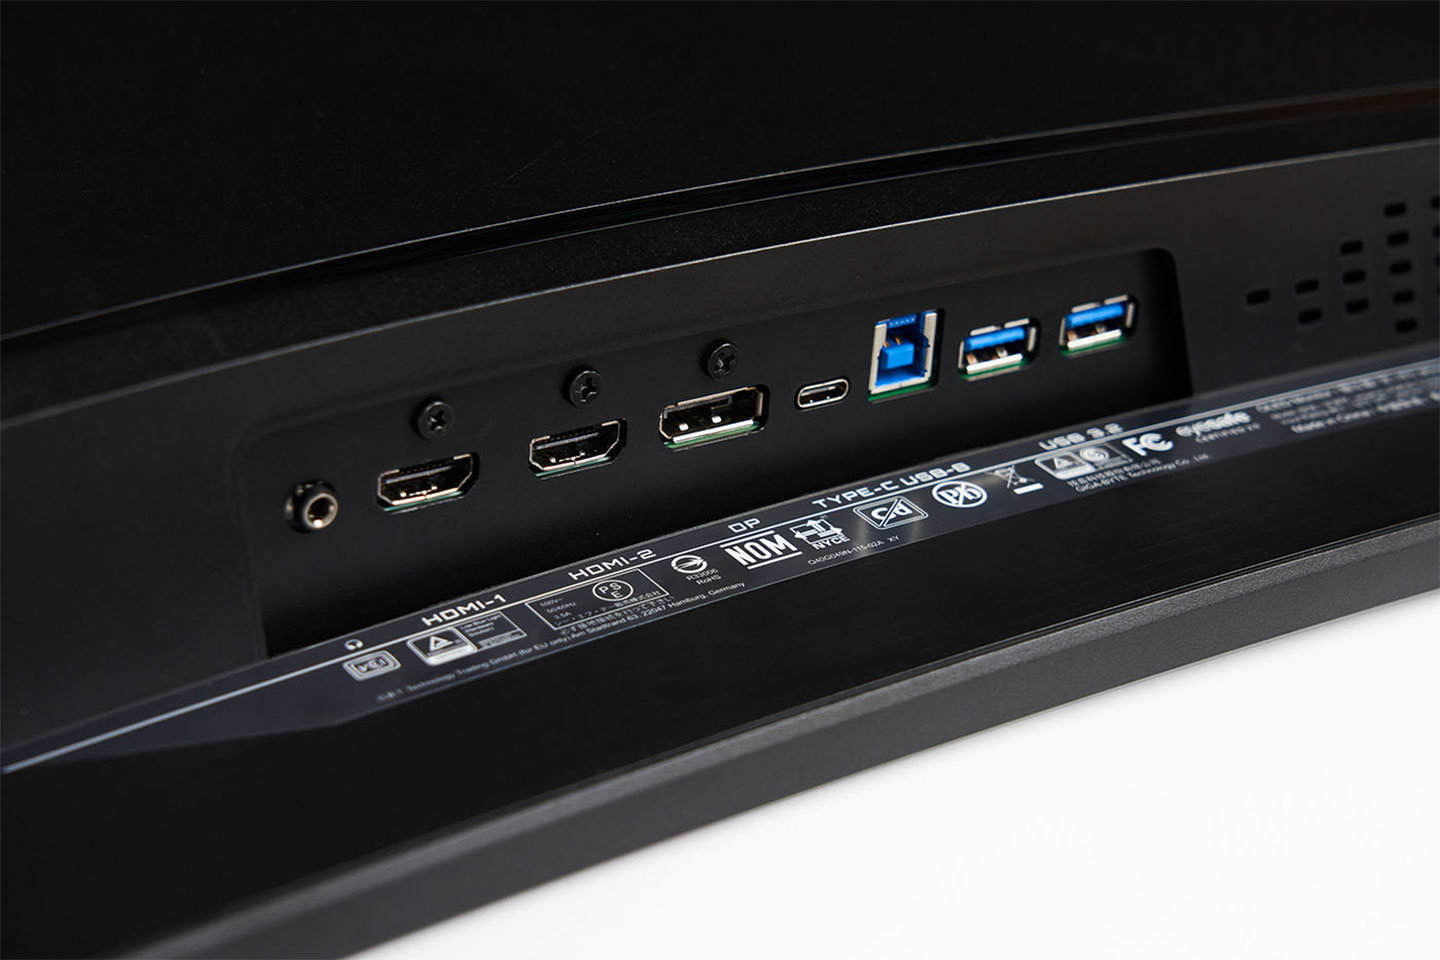 連結埠同樣置於底側，左至右分別為 3.5 mm 音源輸出、HDMI 2.1 兩組、DP 1.4 一組、USB-C 一組、USB-B 一組（連結電腦擴充用）、兩組 USB 3.2 埠可連結鍵盤、滑鼠支援 KVM 功能。